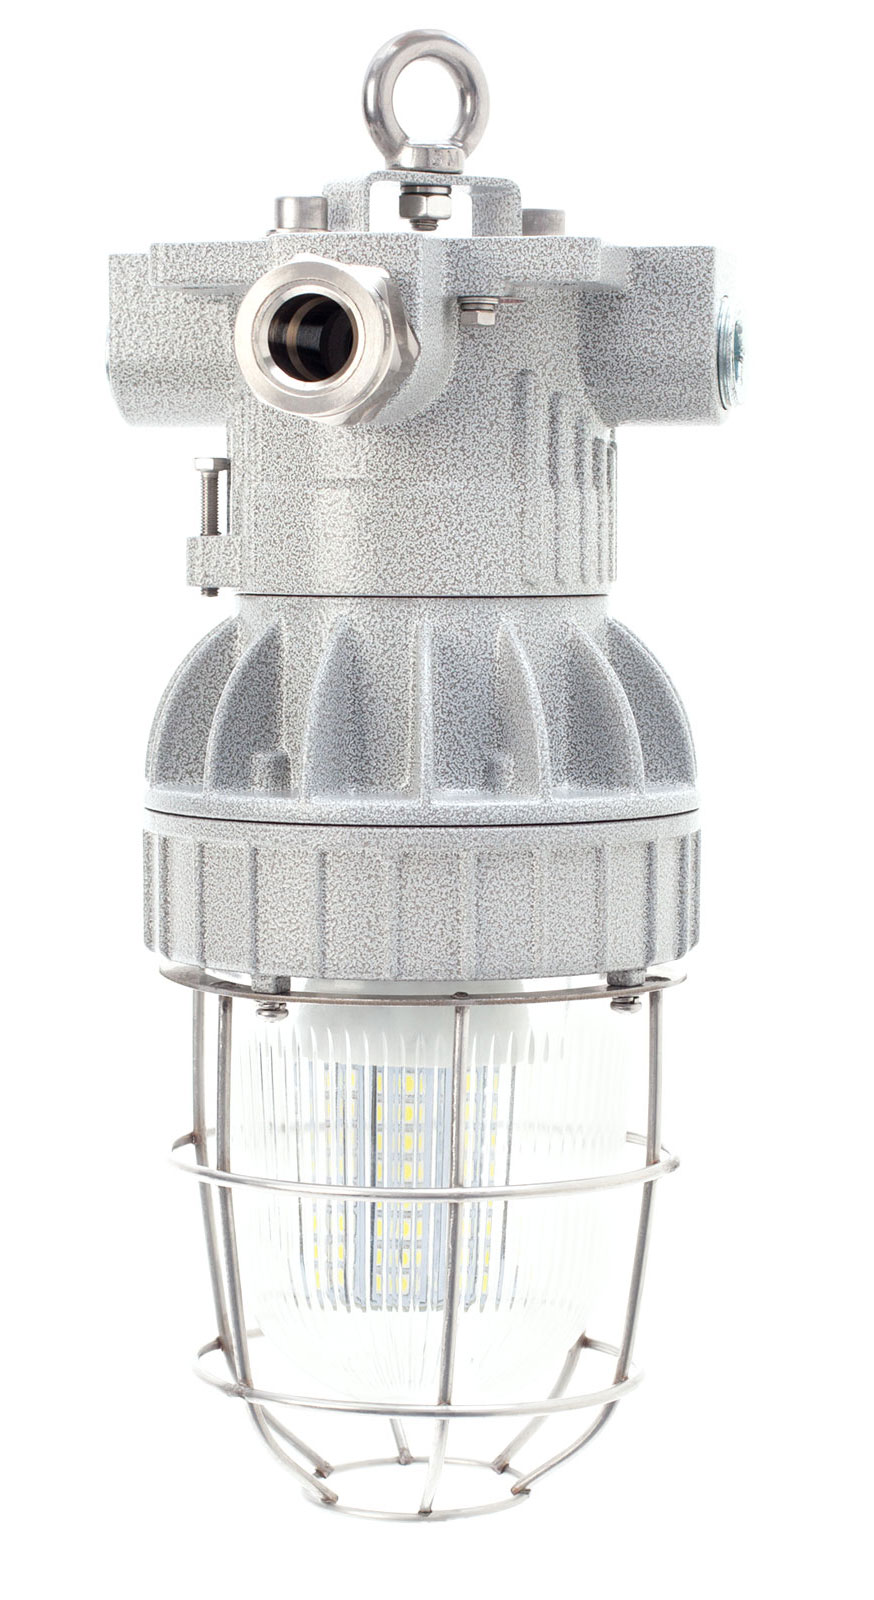 Взрывозащищенные светильники СГЖ01 (EV) под различные лампы с цоколем Е27 (для ламп накаливания, энергосберегающих ламп и др.)